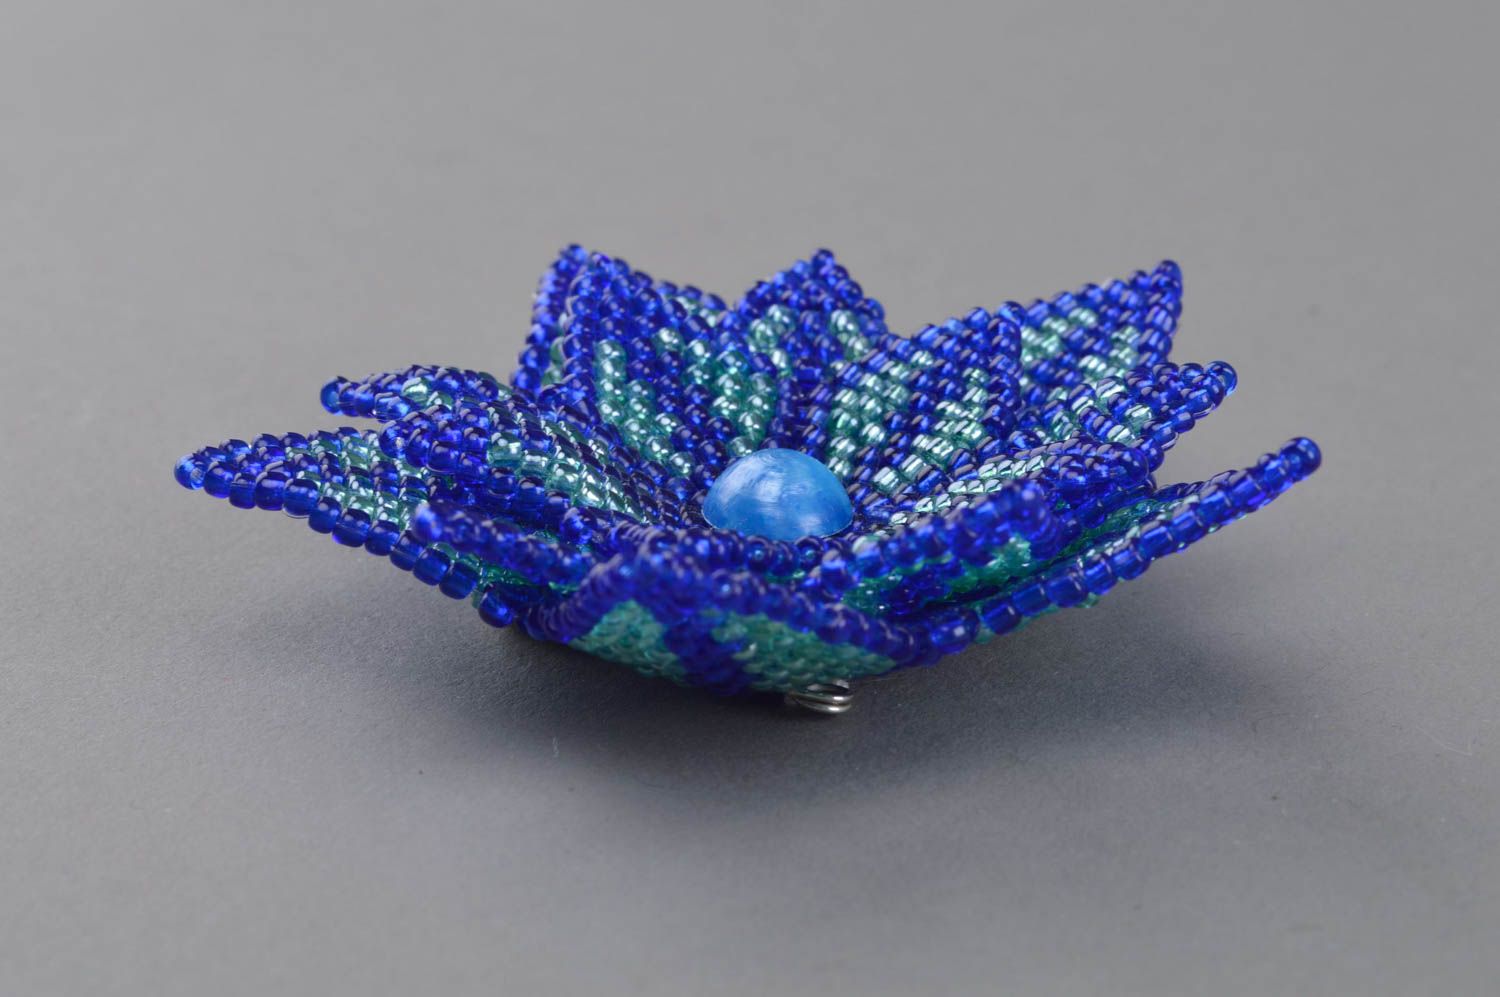 Blaue Blumen künstlerische Brosche aus Glasperlen einyigartig sch;n handmade foto 3